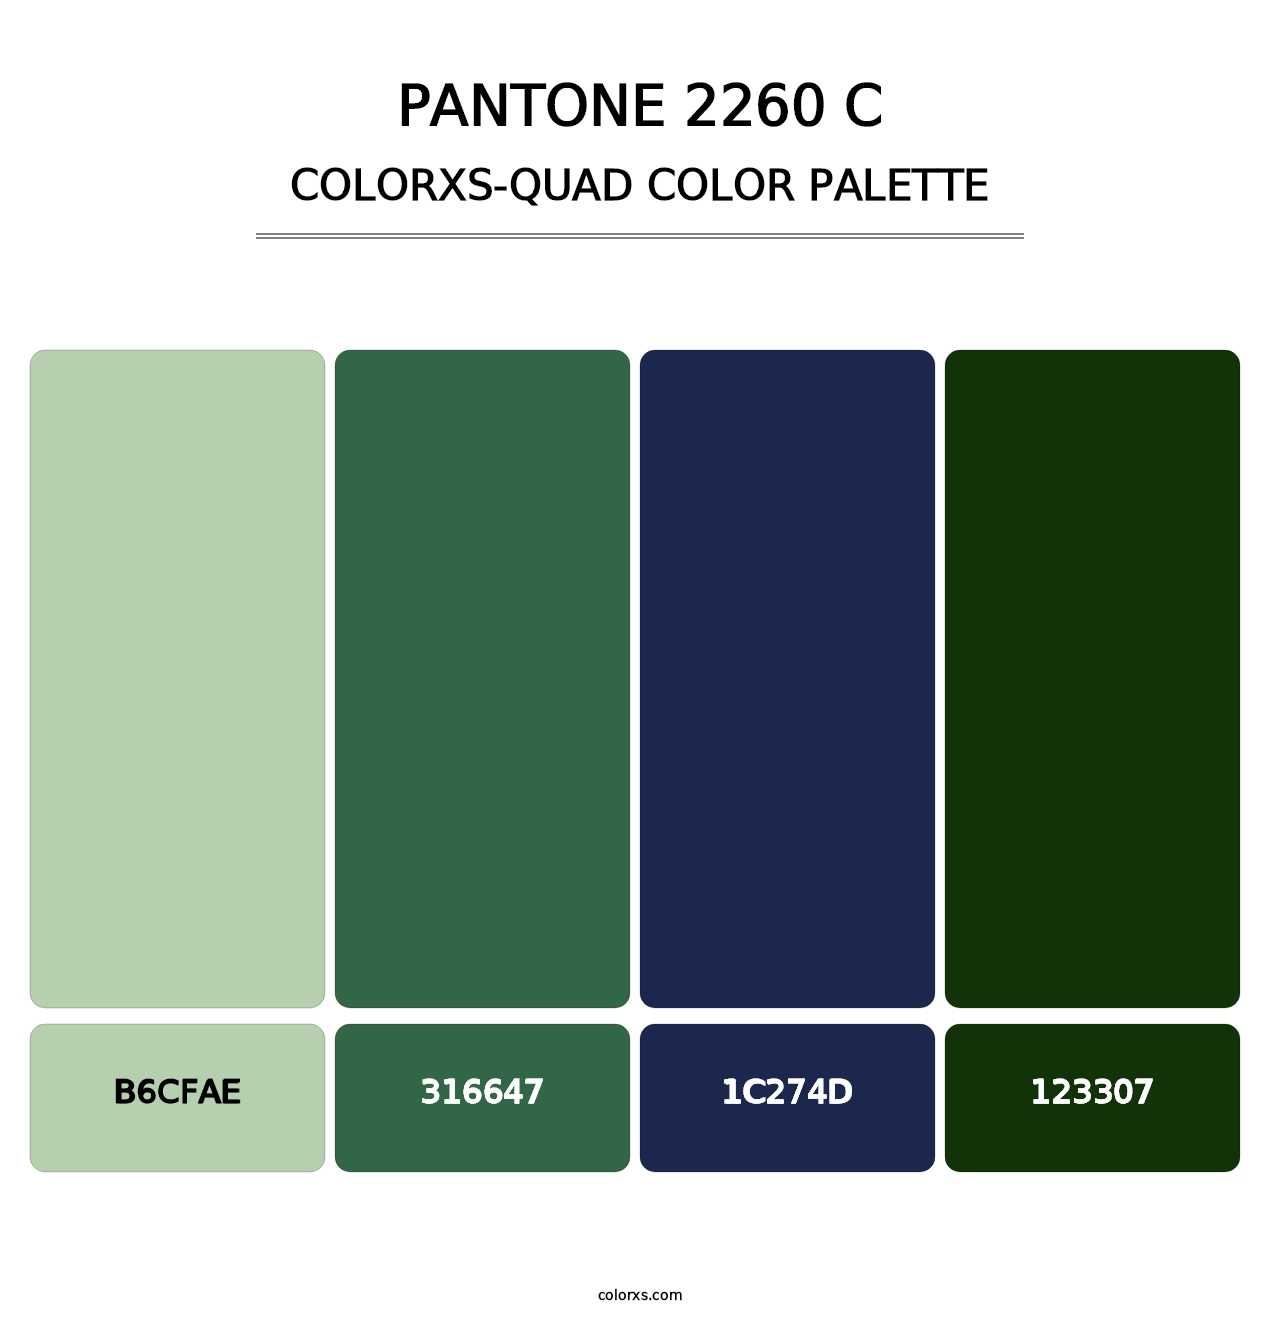 PANTONE 2260 C - Colorxs Quad Palette